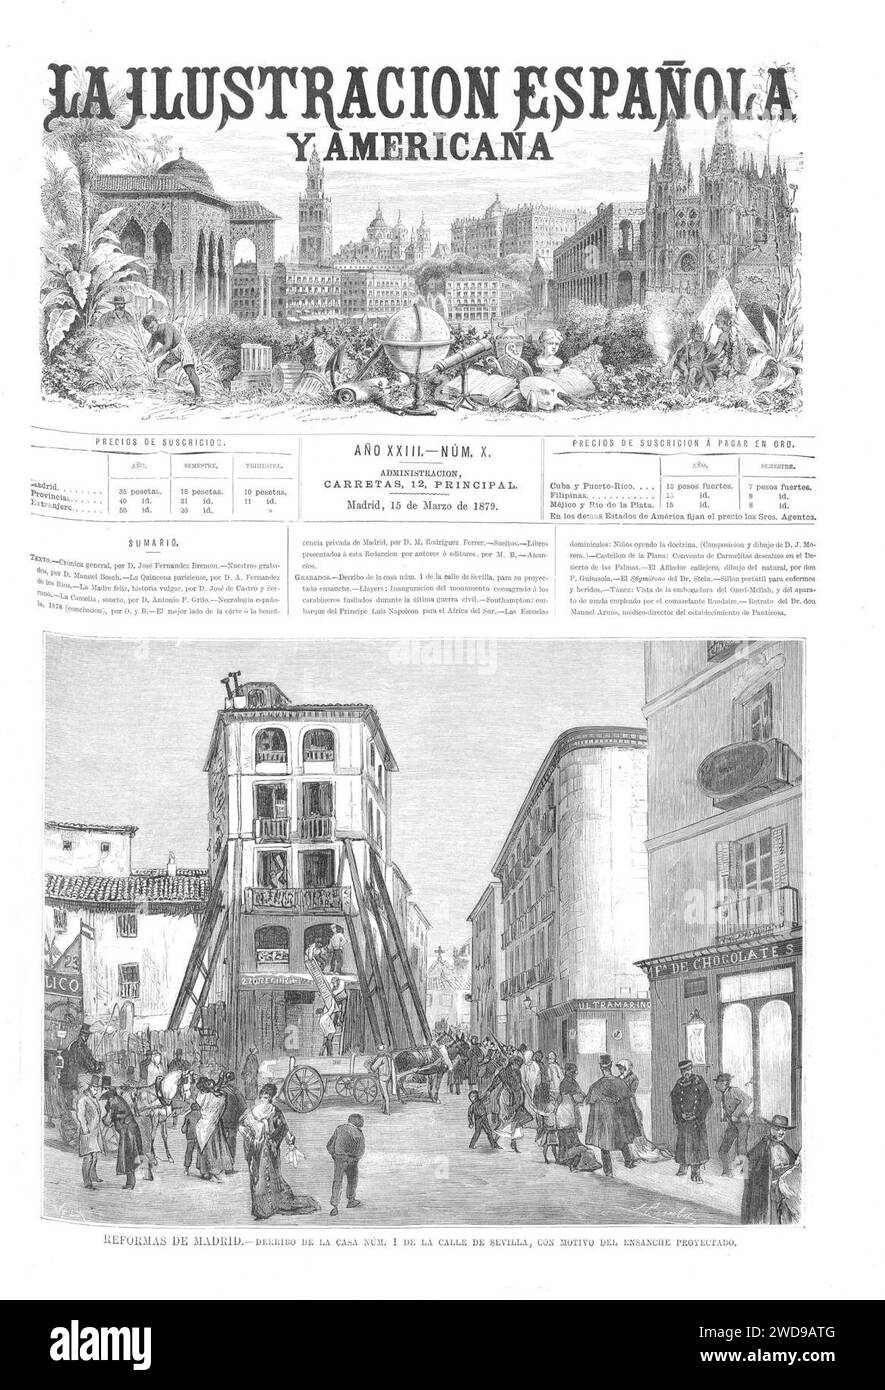 1879-03-15, La Ilustración Española y Americana, Reformas de Madrid, Derribo de la casa núm. 1 de la calle de Sevilla, con motivo del ensanche proyectado. Stock Photo